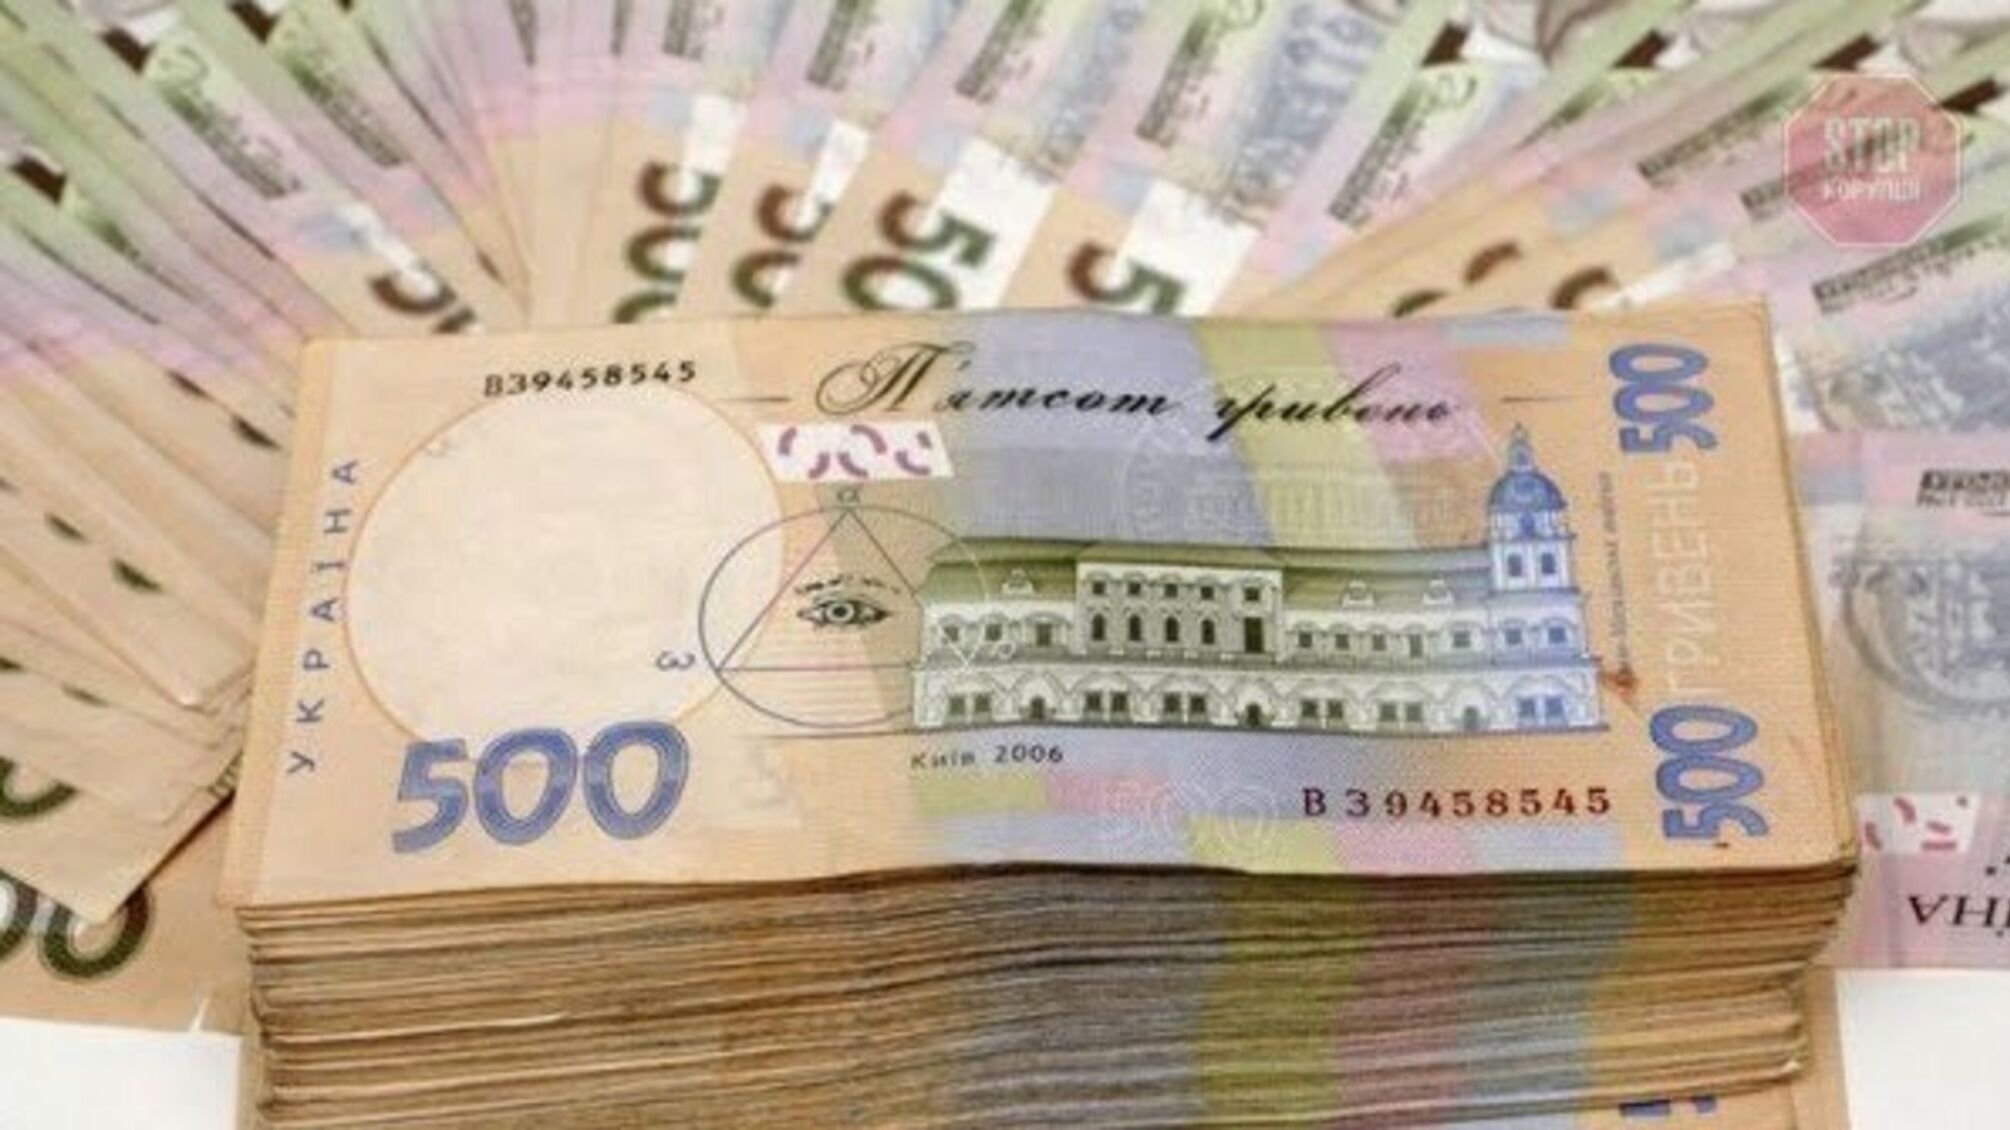 Експравоохоронець після обшуку 'загубив' 1,2 мільйона гривень